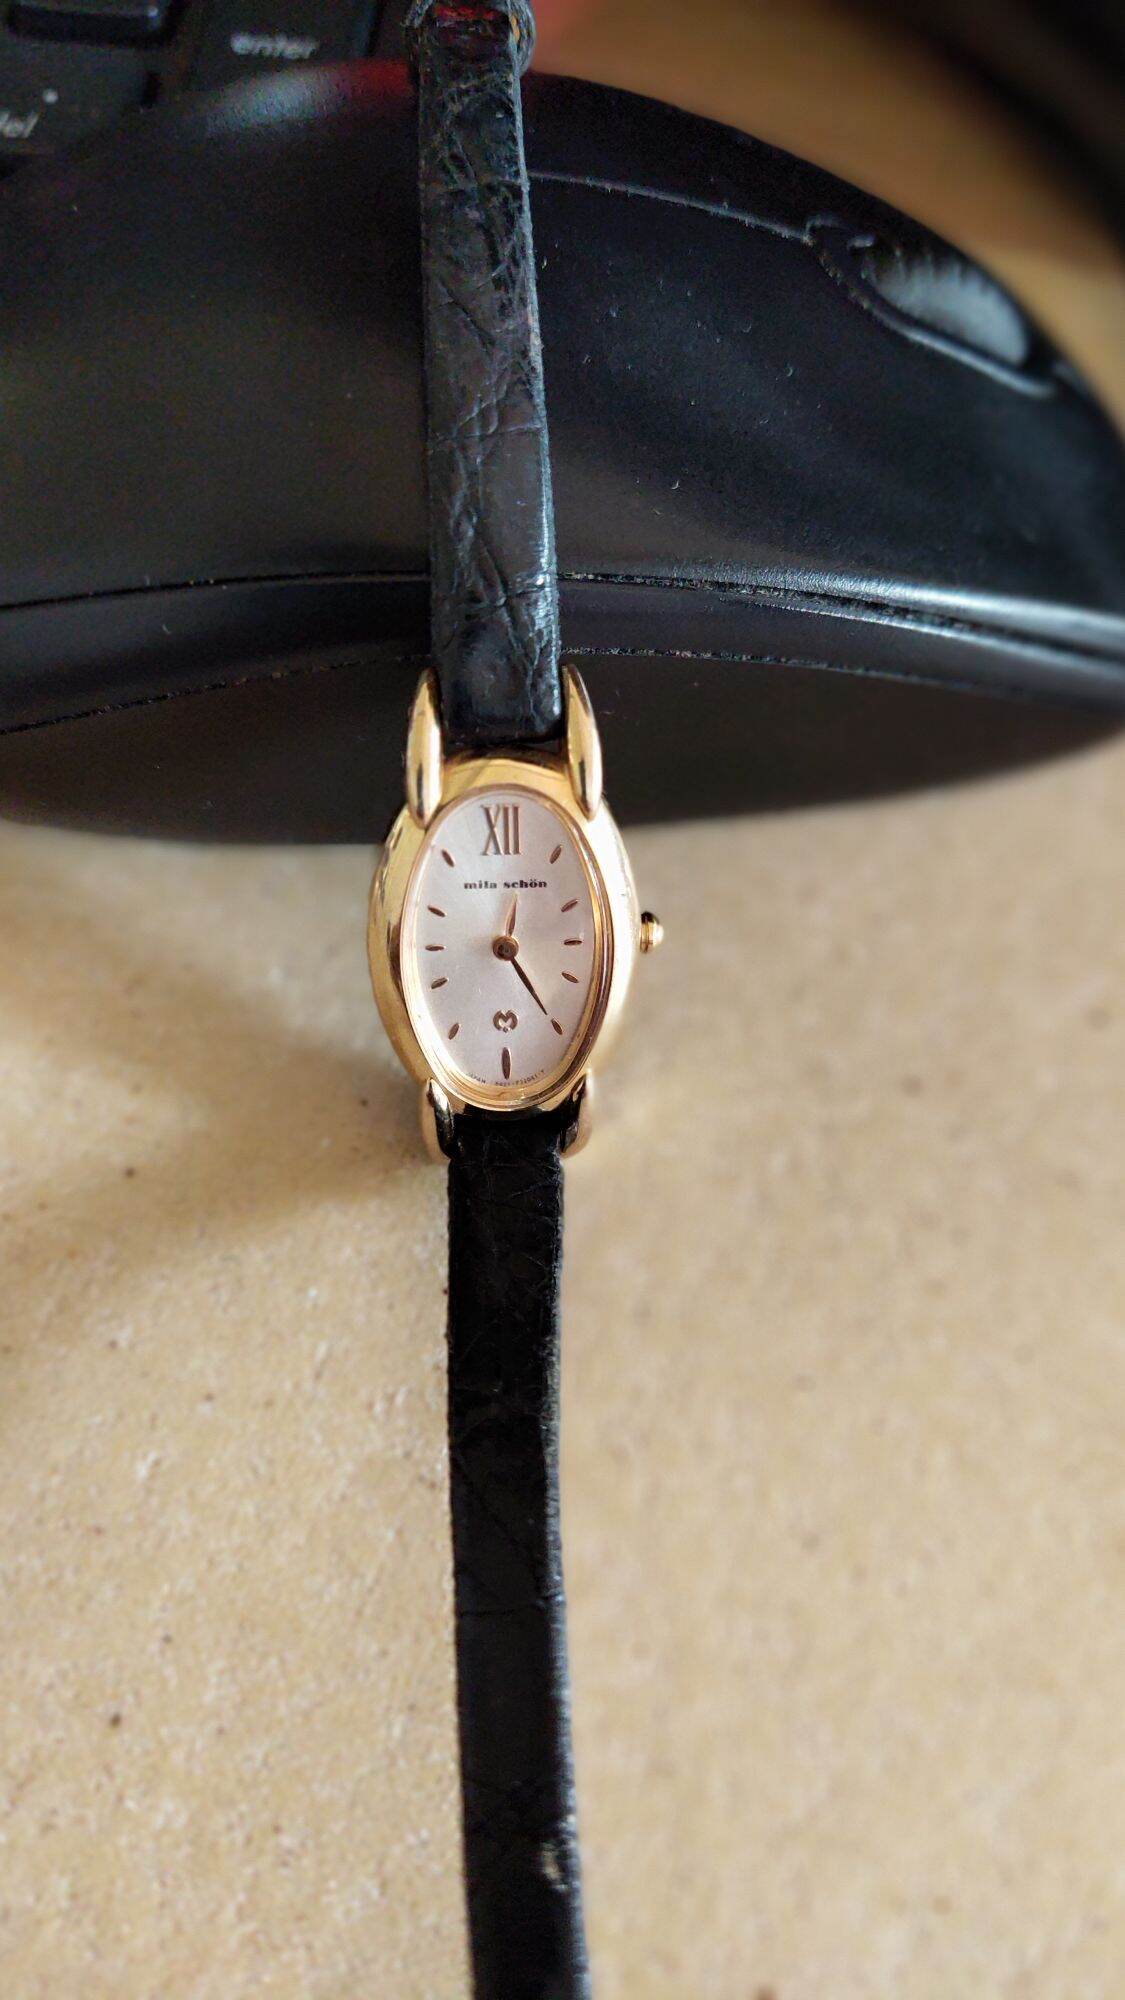 Đồng hồ nữ hiệu Mila Schon-quartz chính hãng thumbnail